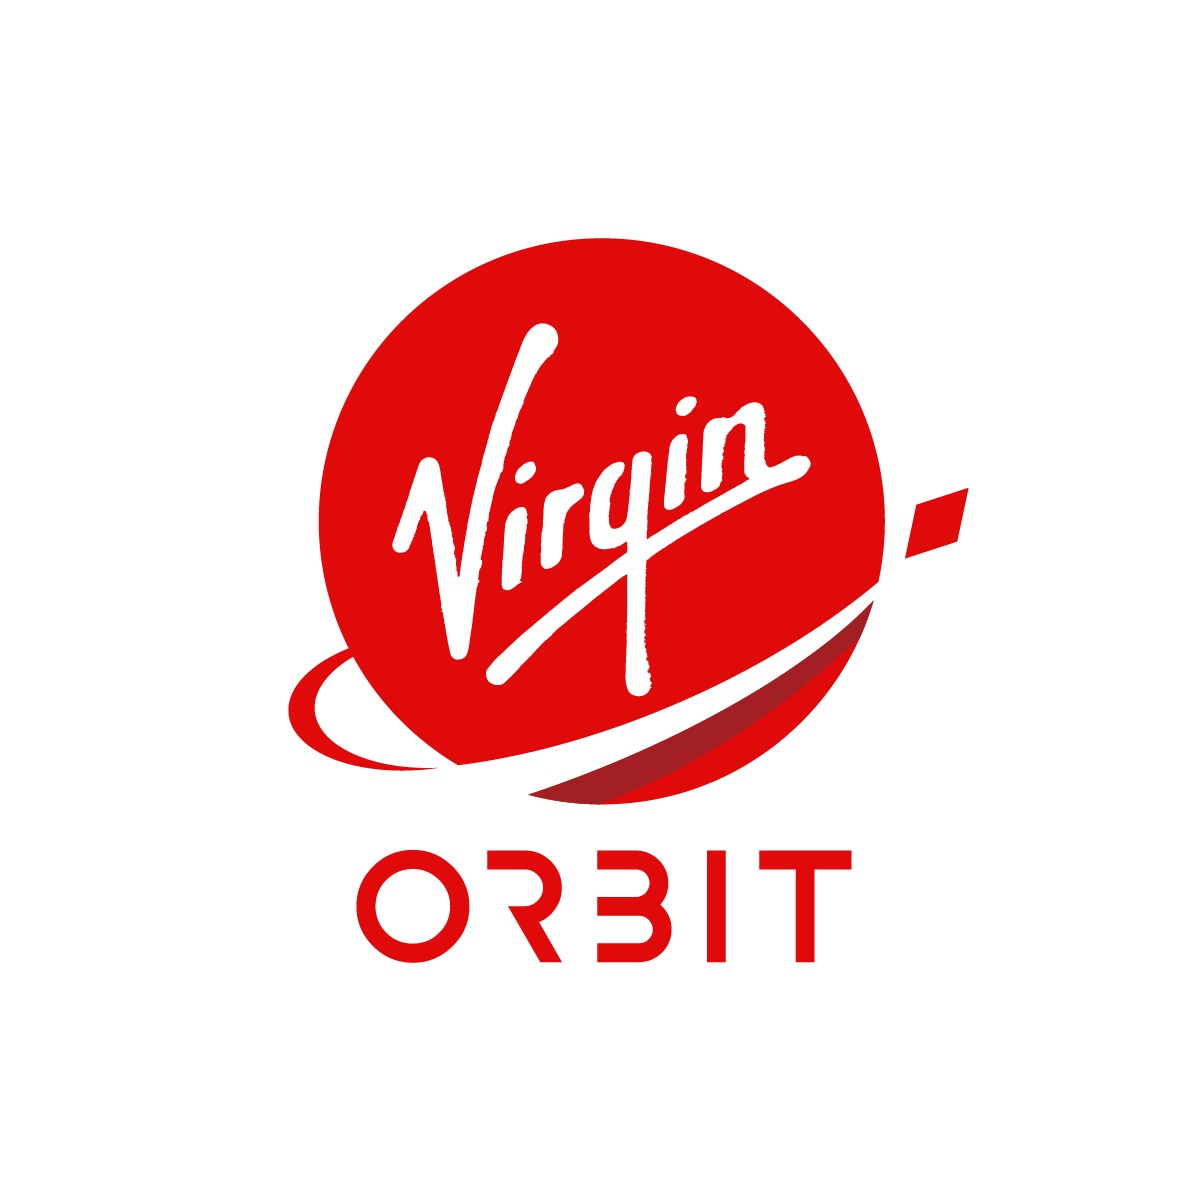 VIRGIN ORBIT